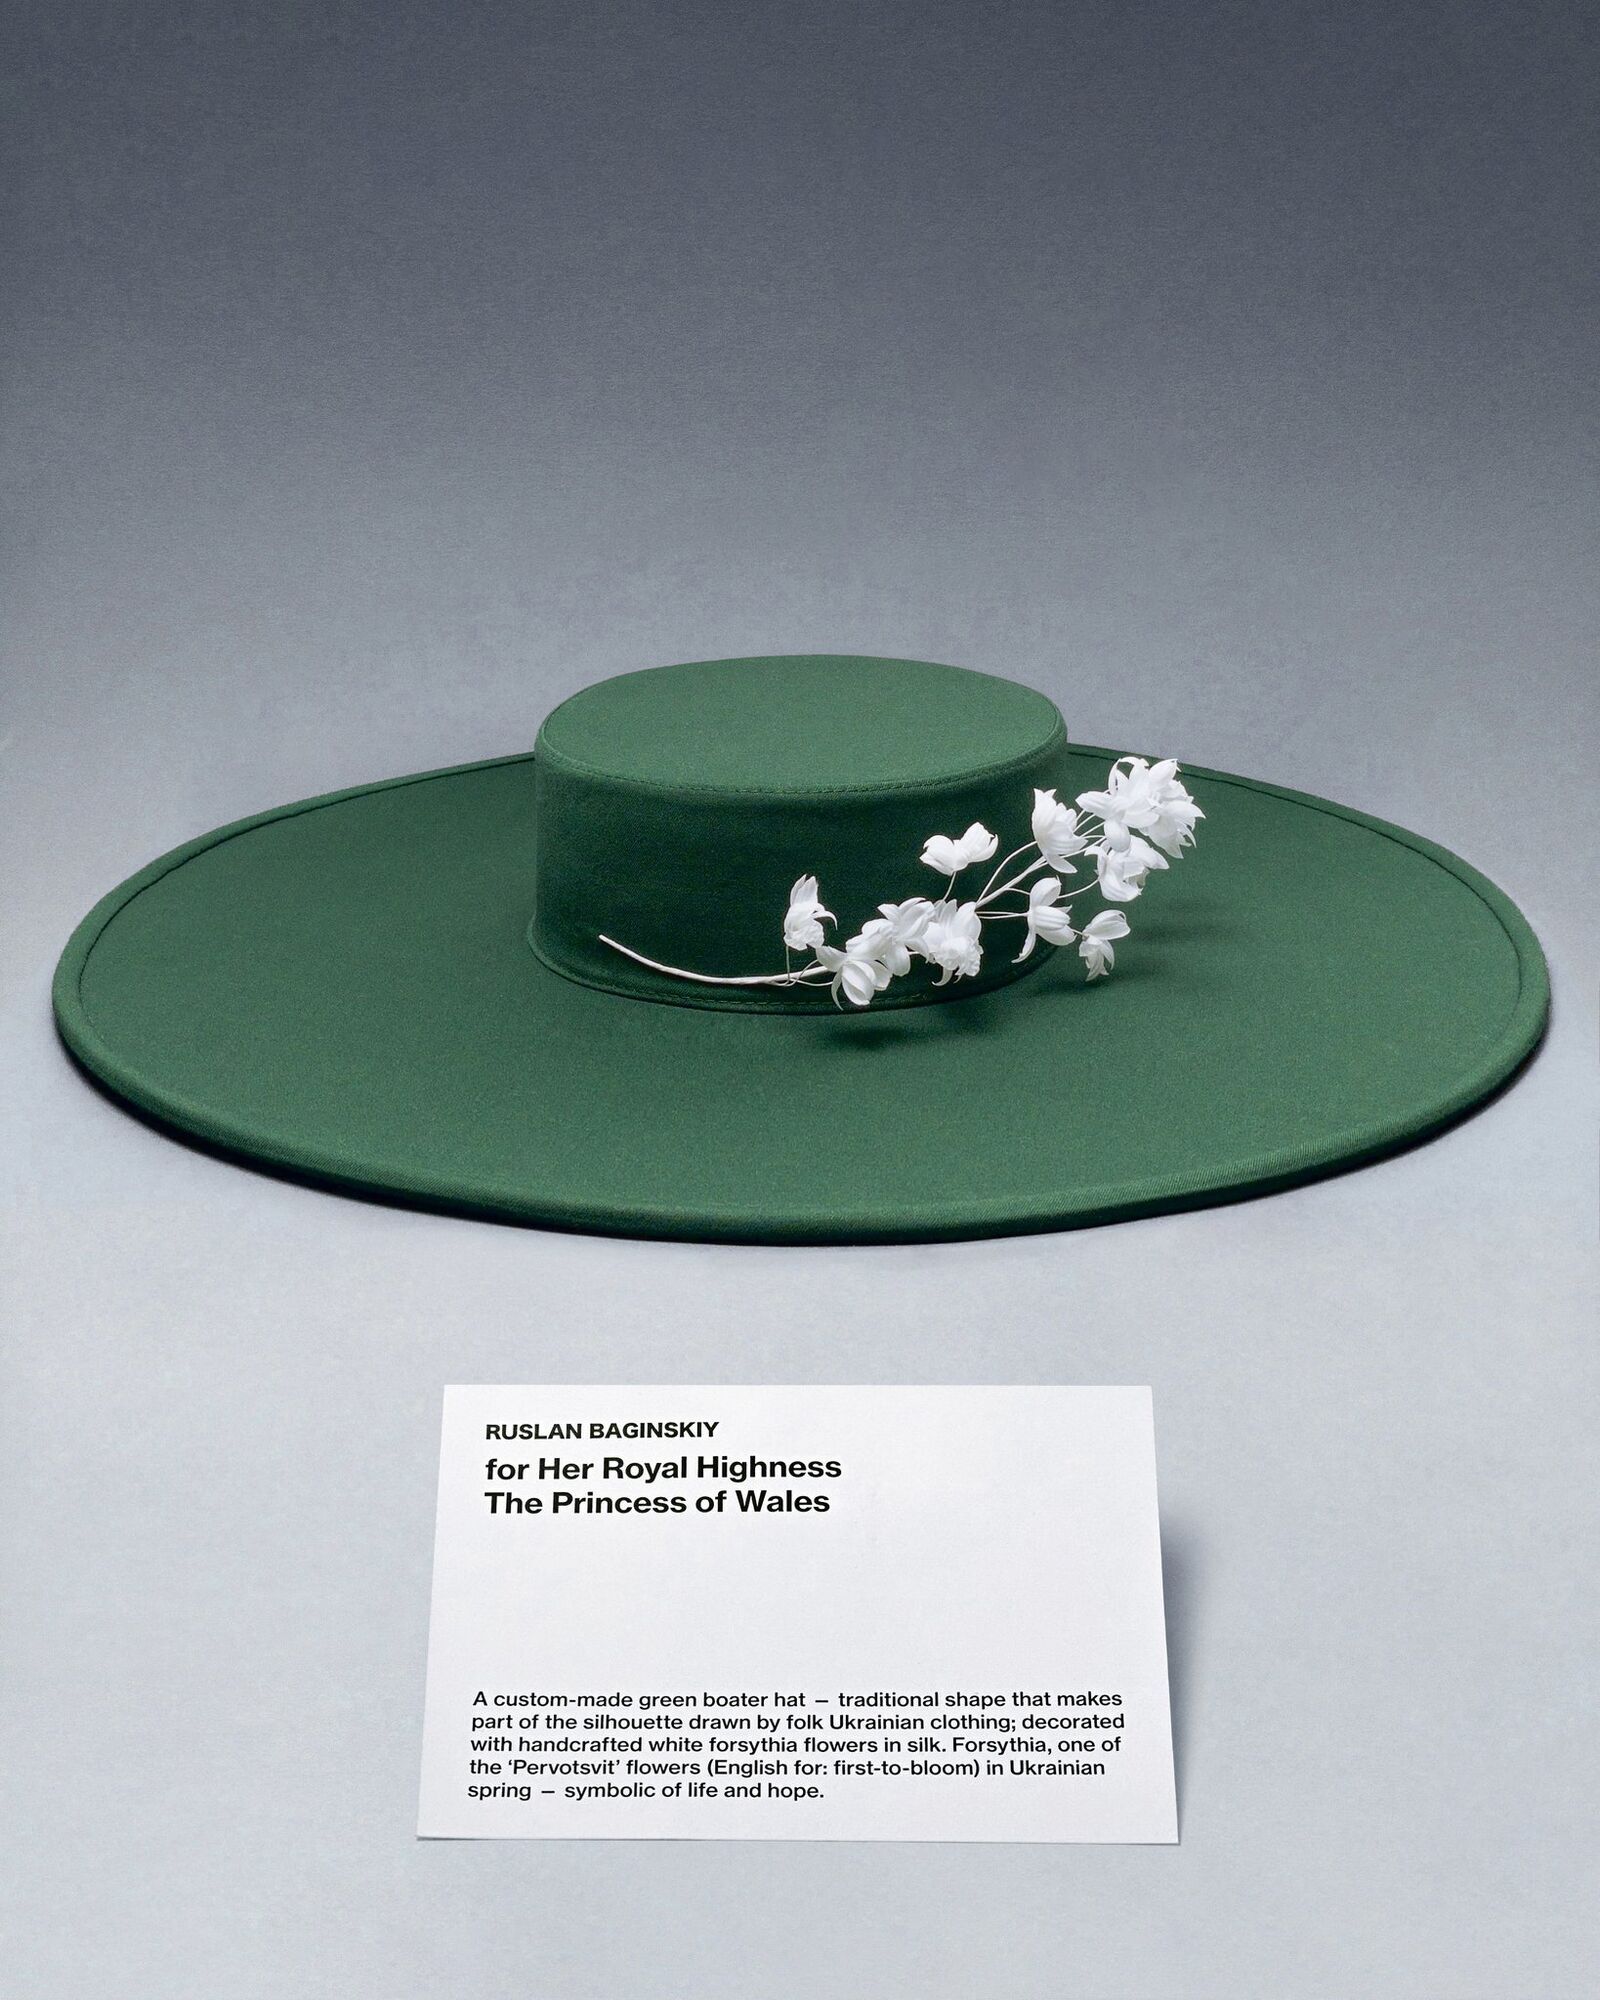 Kate Middleton i królowa Camilla będą nosić kapelusze od ukraińskiego projektanta: jaka jest ich symbolika. fot.